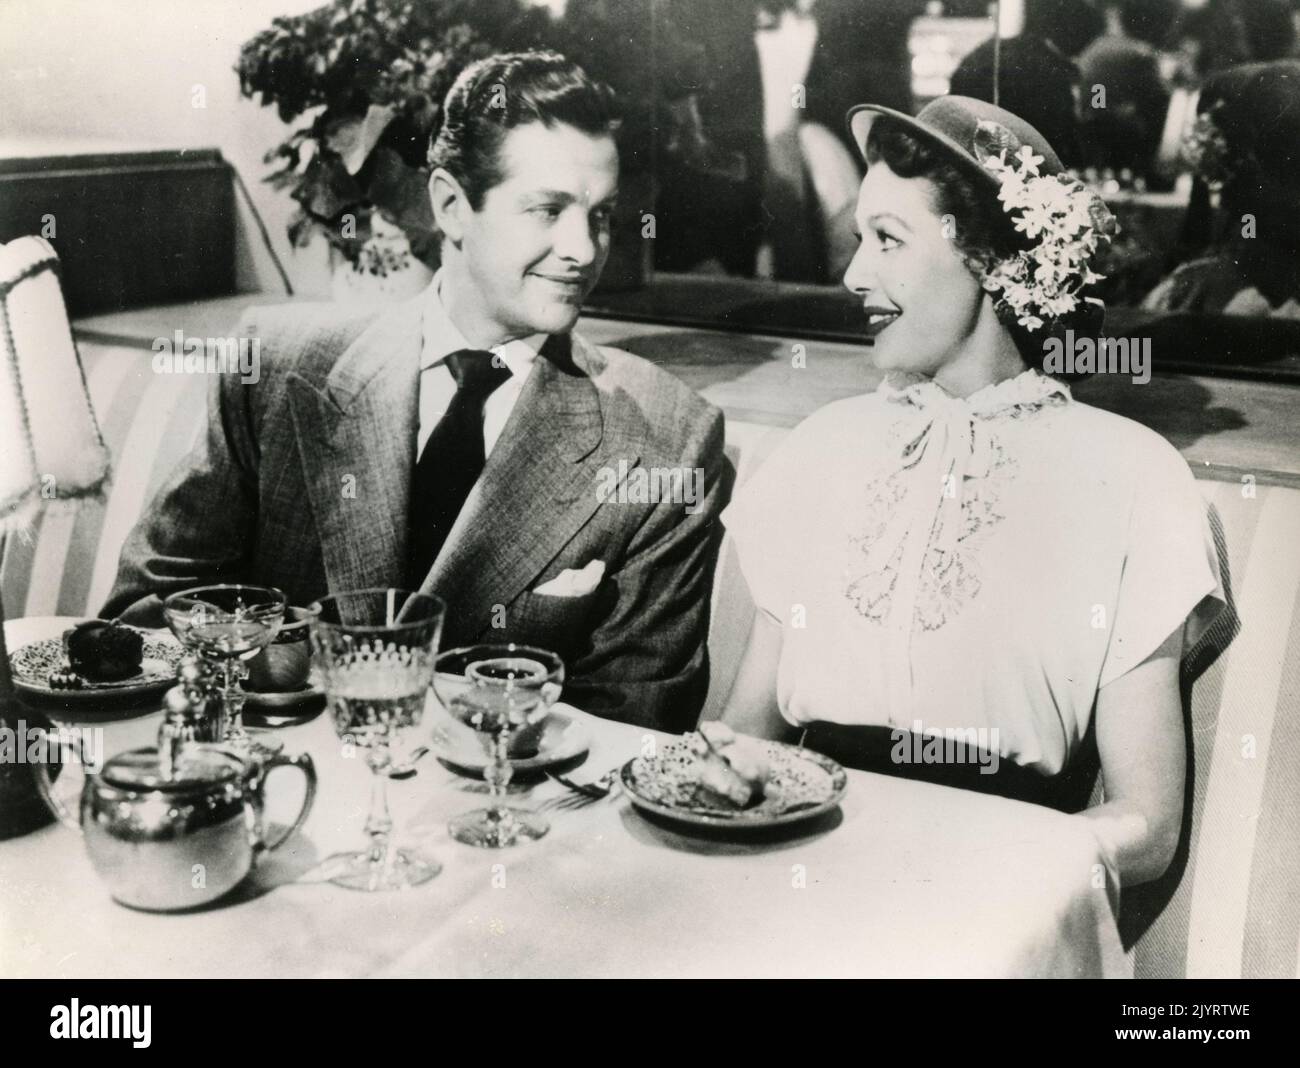 L'acteur américain Robert Cummings et l'actrice Loretta Young dans le film The accusés, USA 1949 Banque D'Images